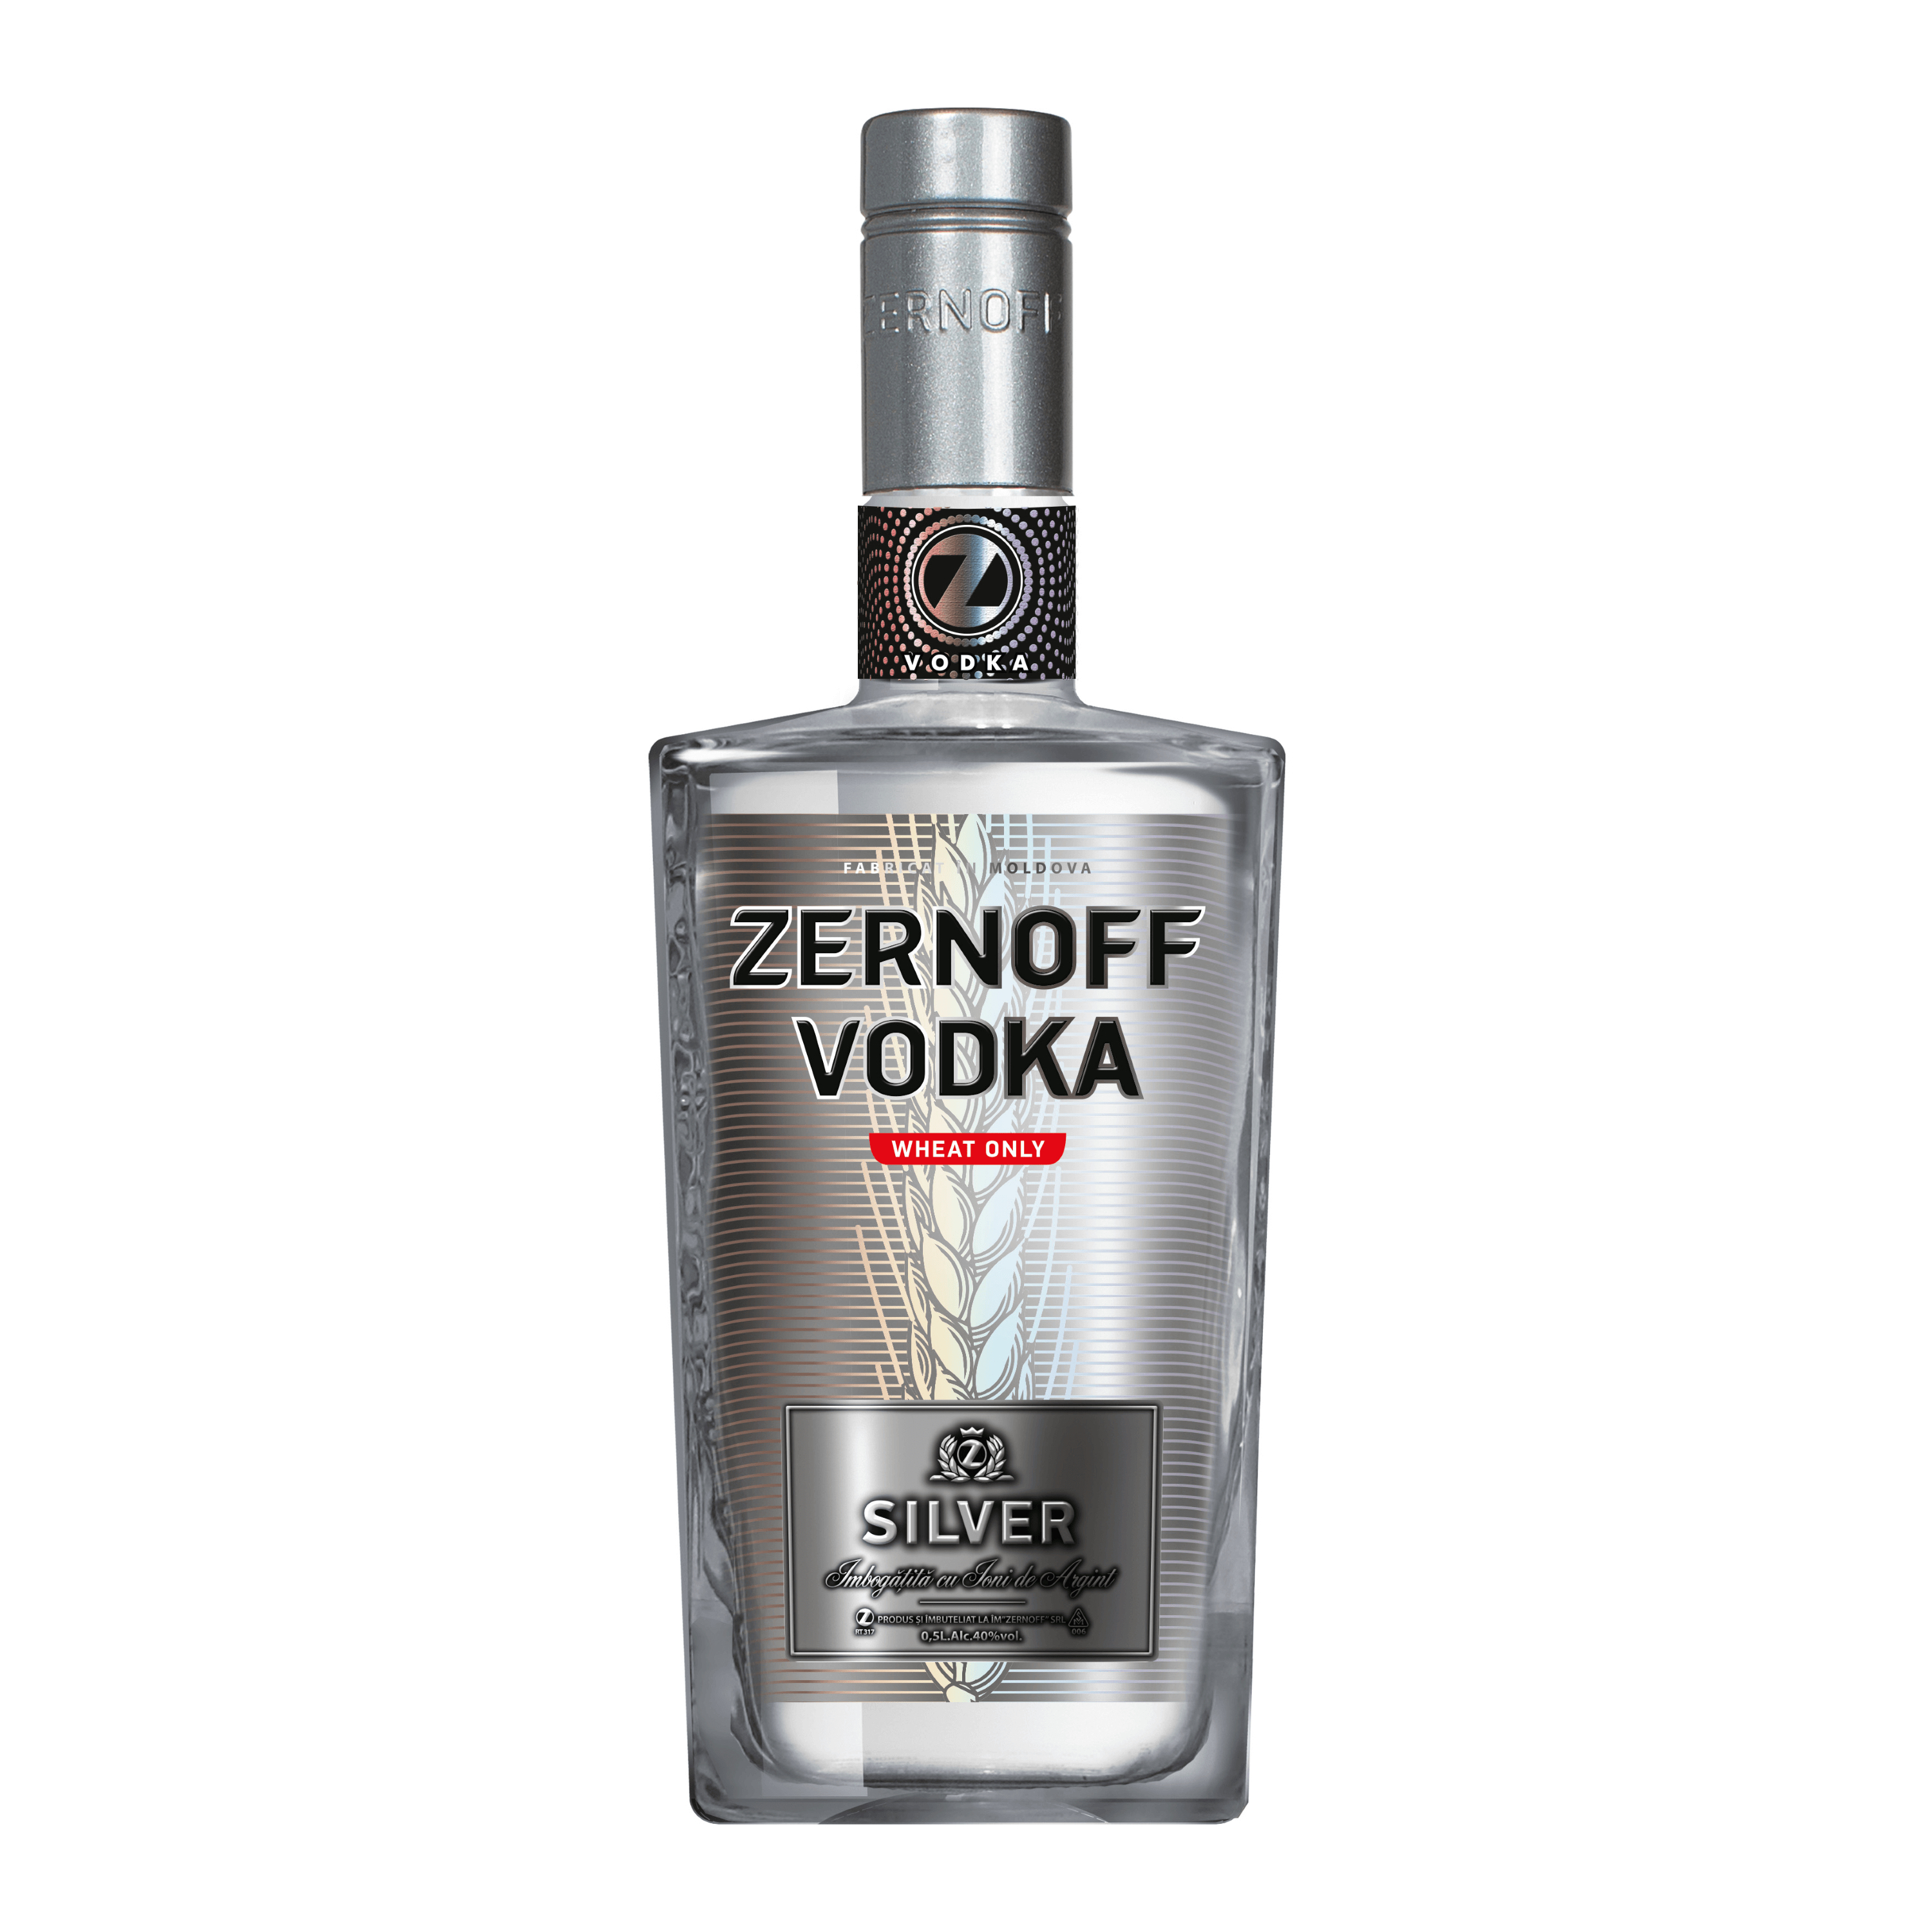 Zernoff Vodka Silver 0,5 Liter - 40% - Premium Vodka til kun 275,-